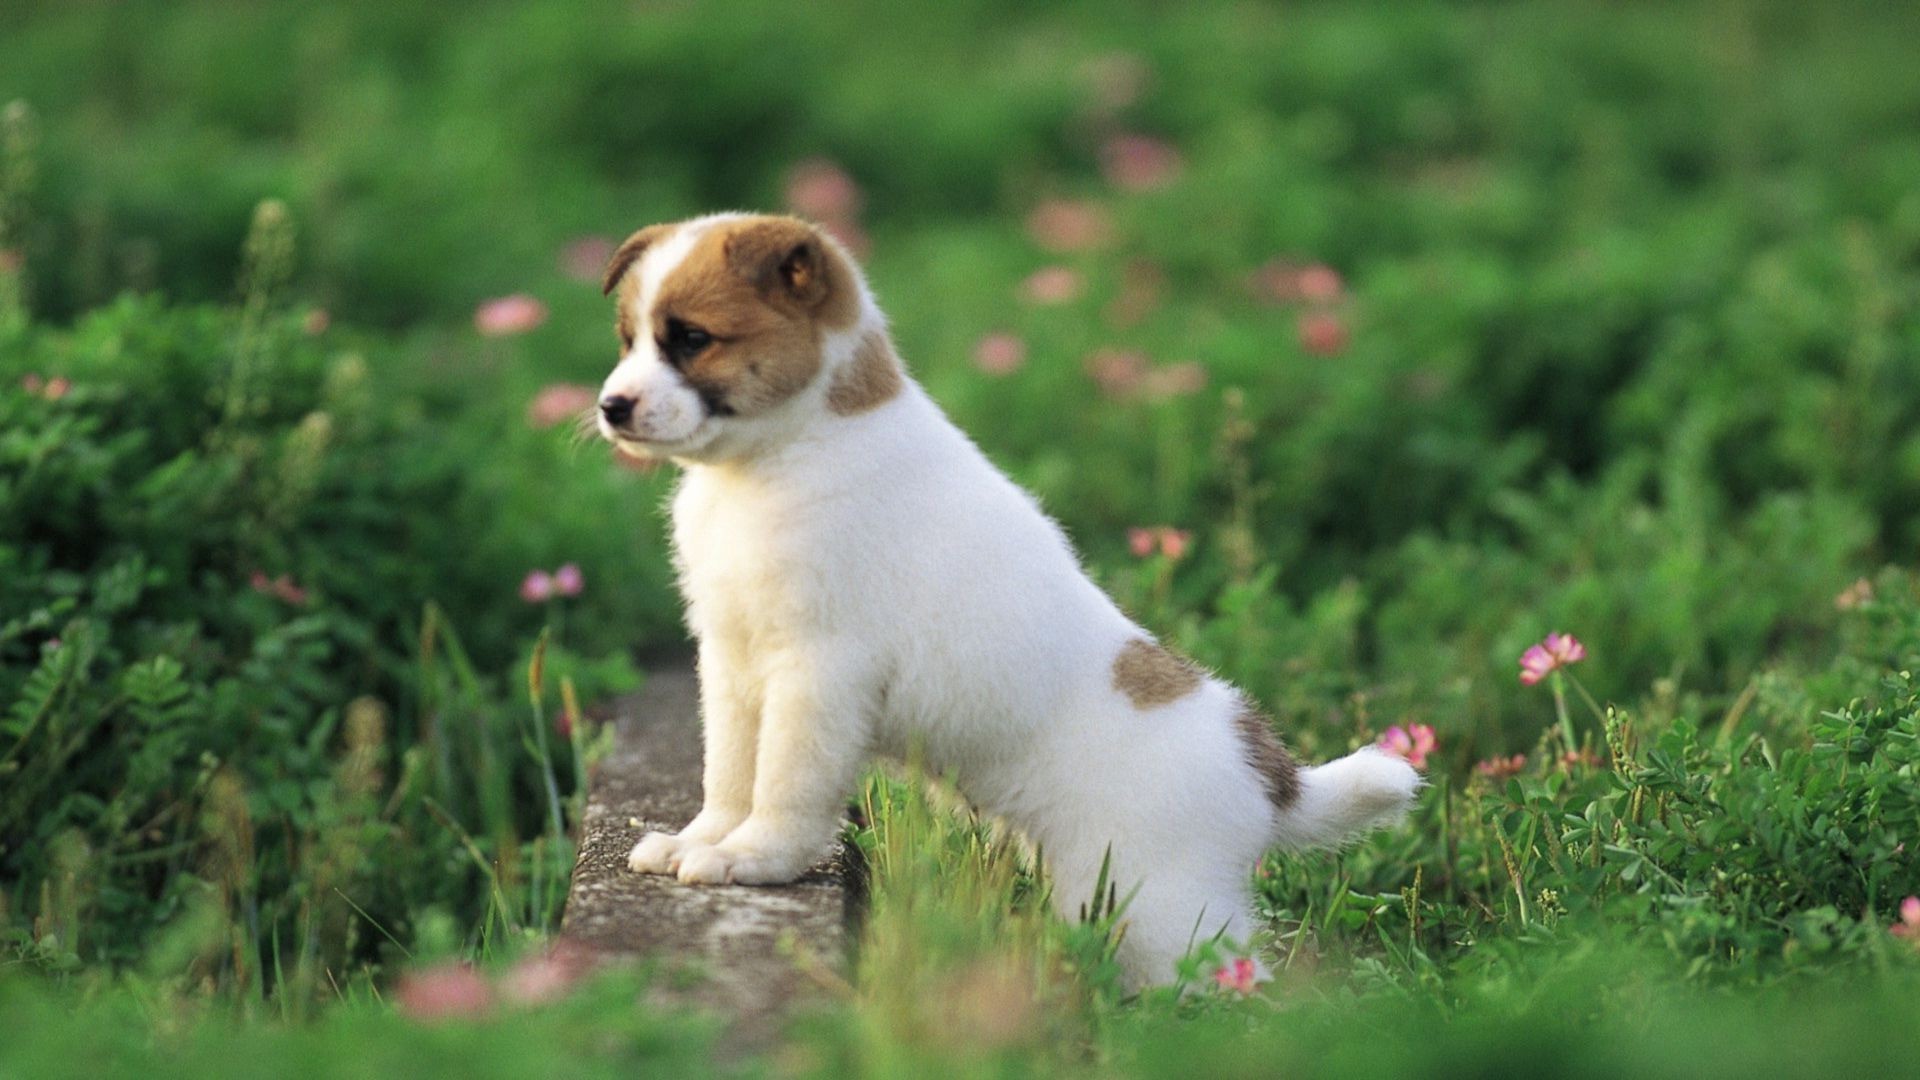 1920x1080 ... 17 Best Ideas About Cute Puppy Wallpaper On Pinterest Pug Cute Puppy  Wallpaper